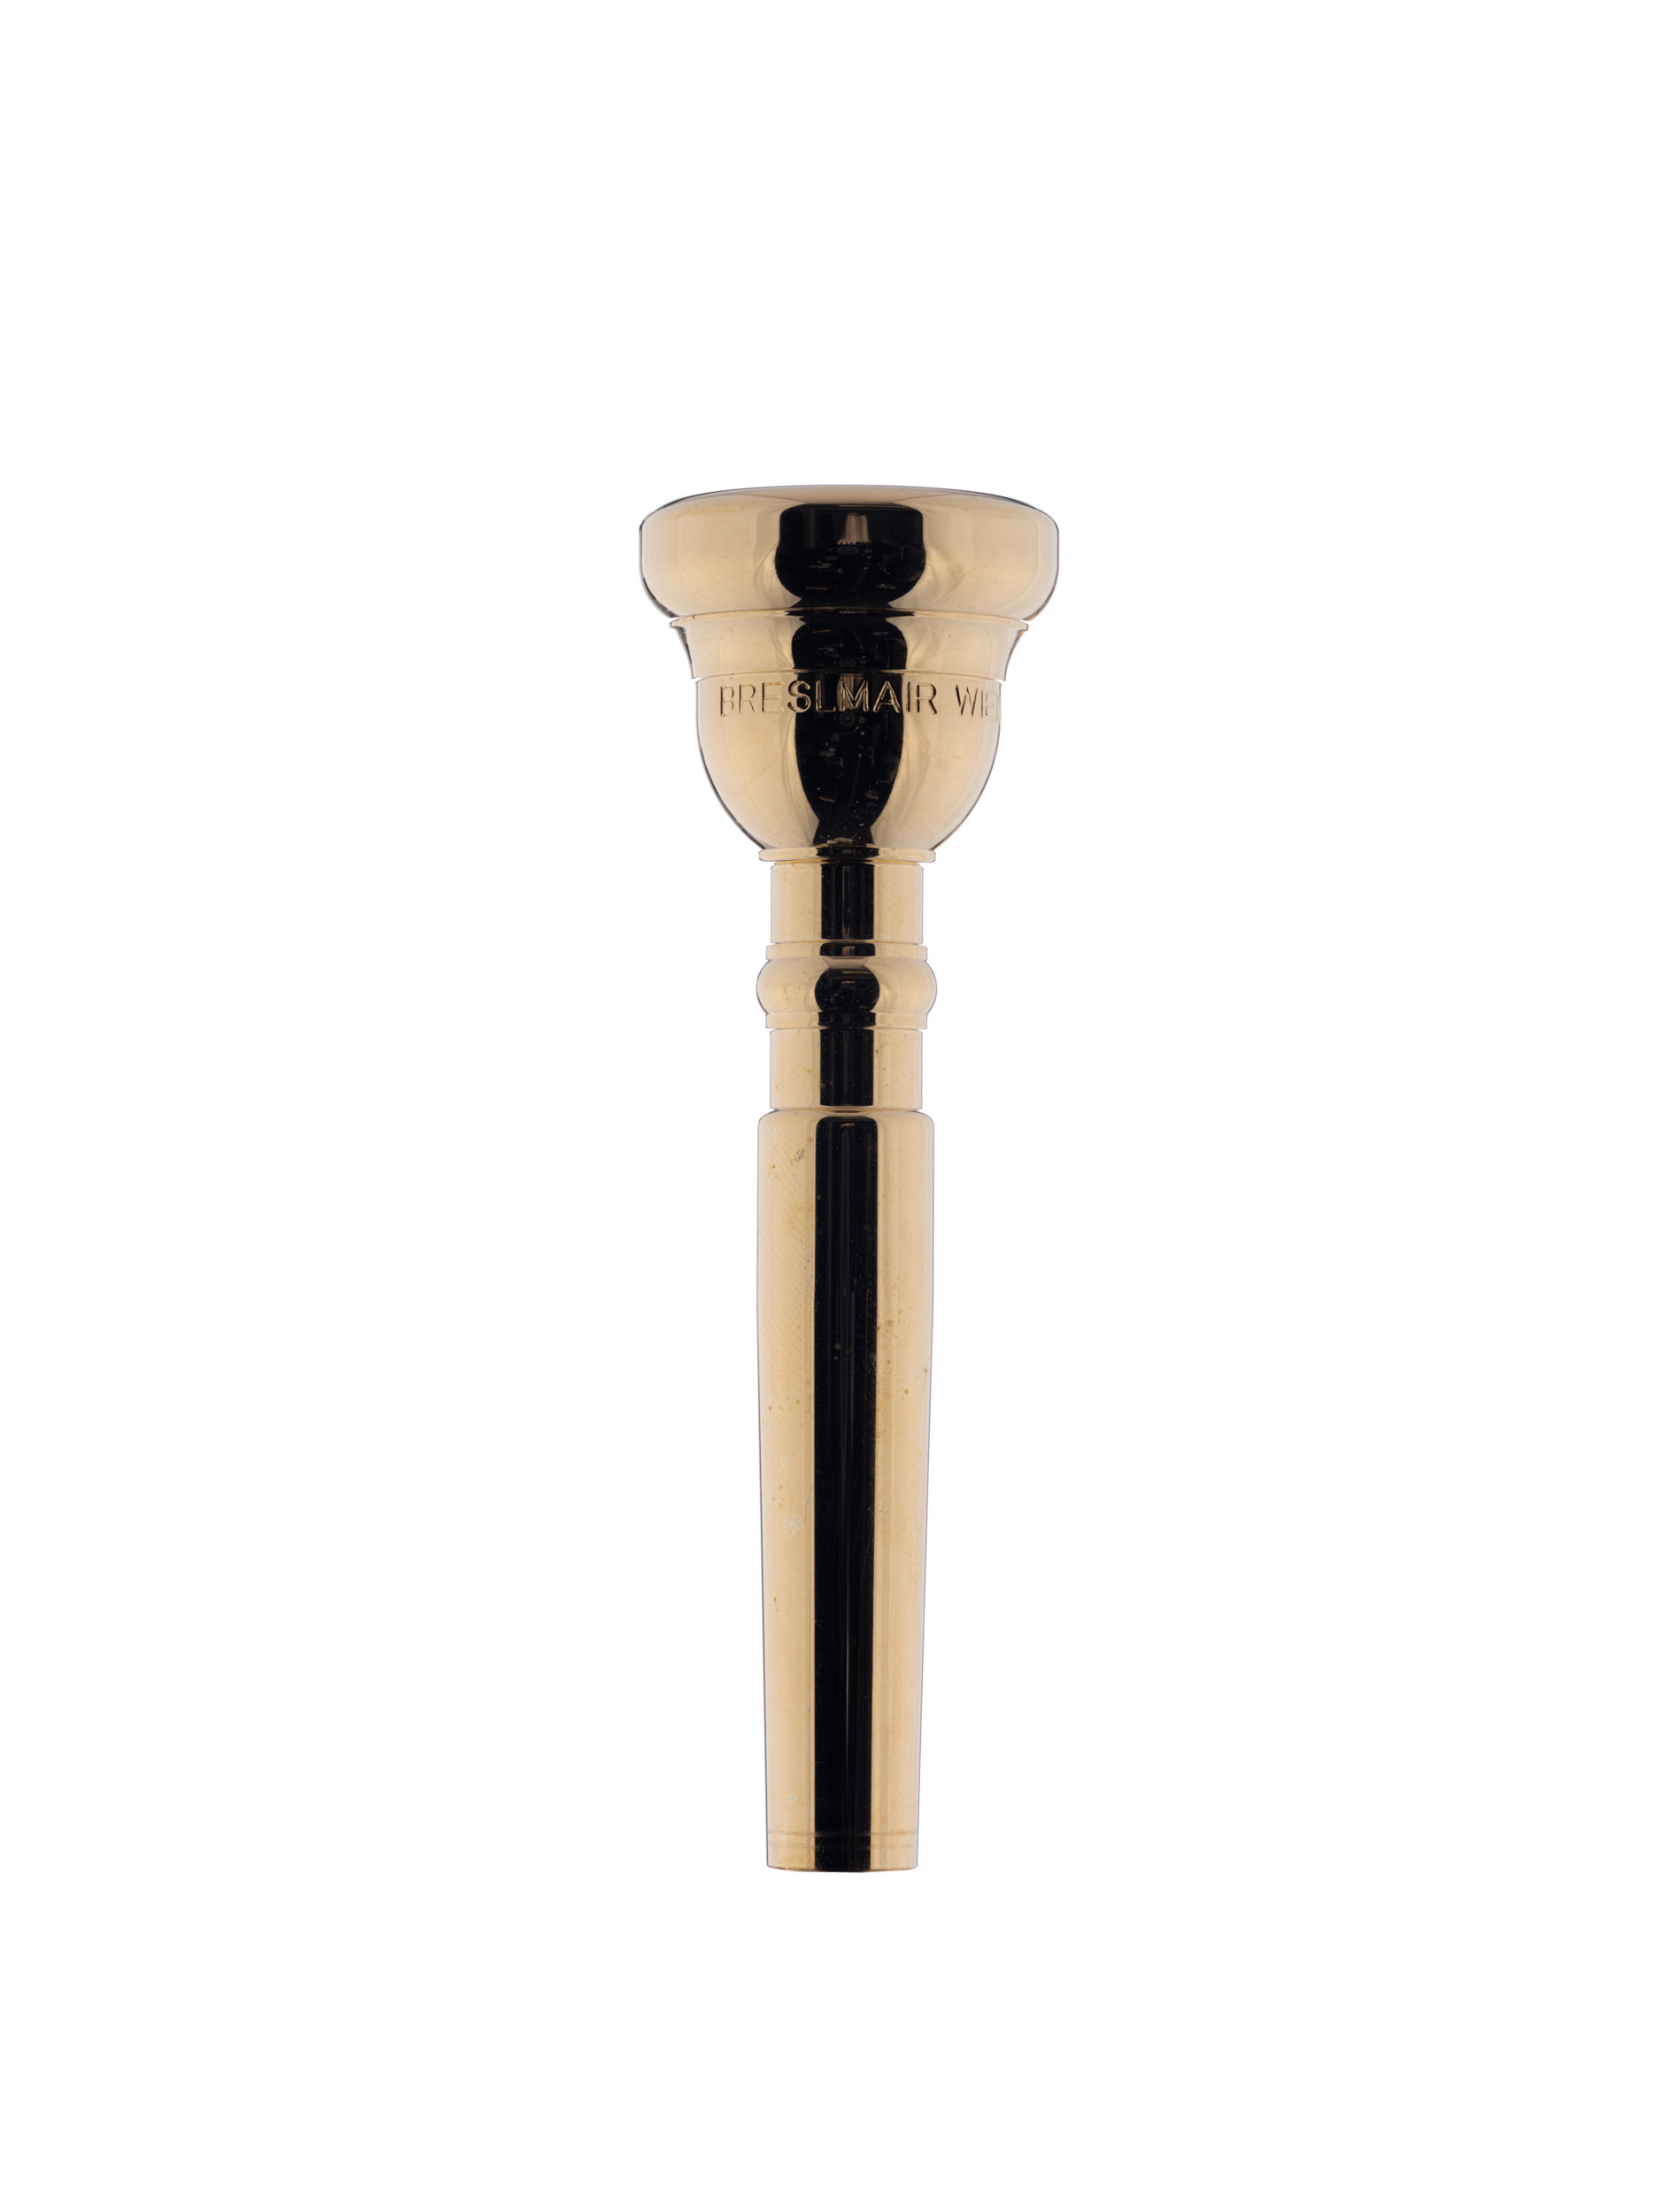 Breslmair Trumpet Mouthpiece G3 gold plated